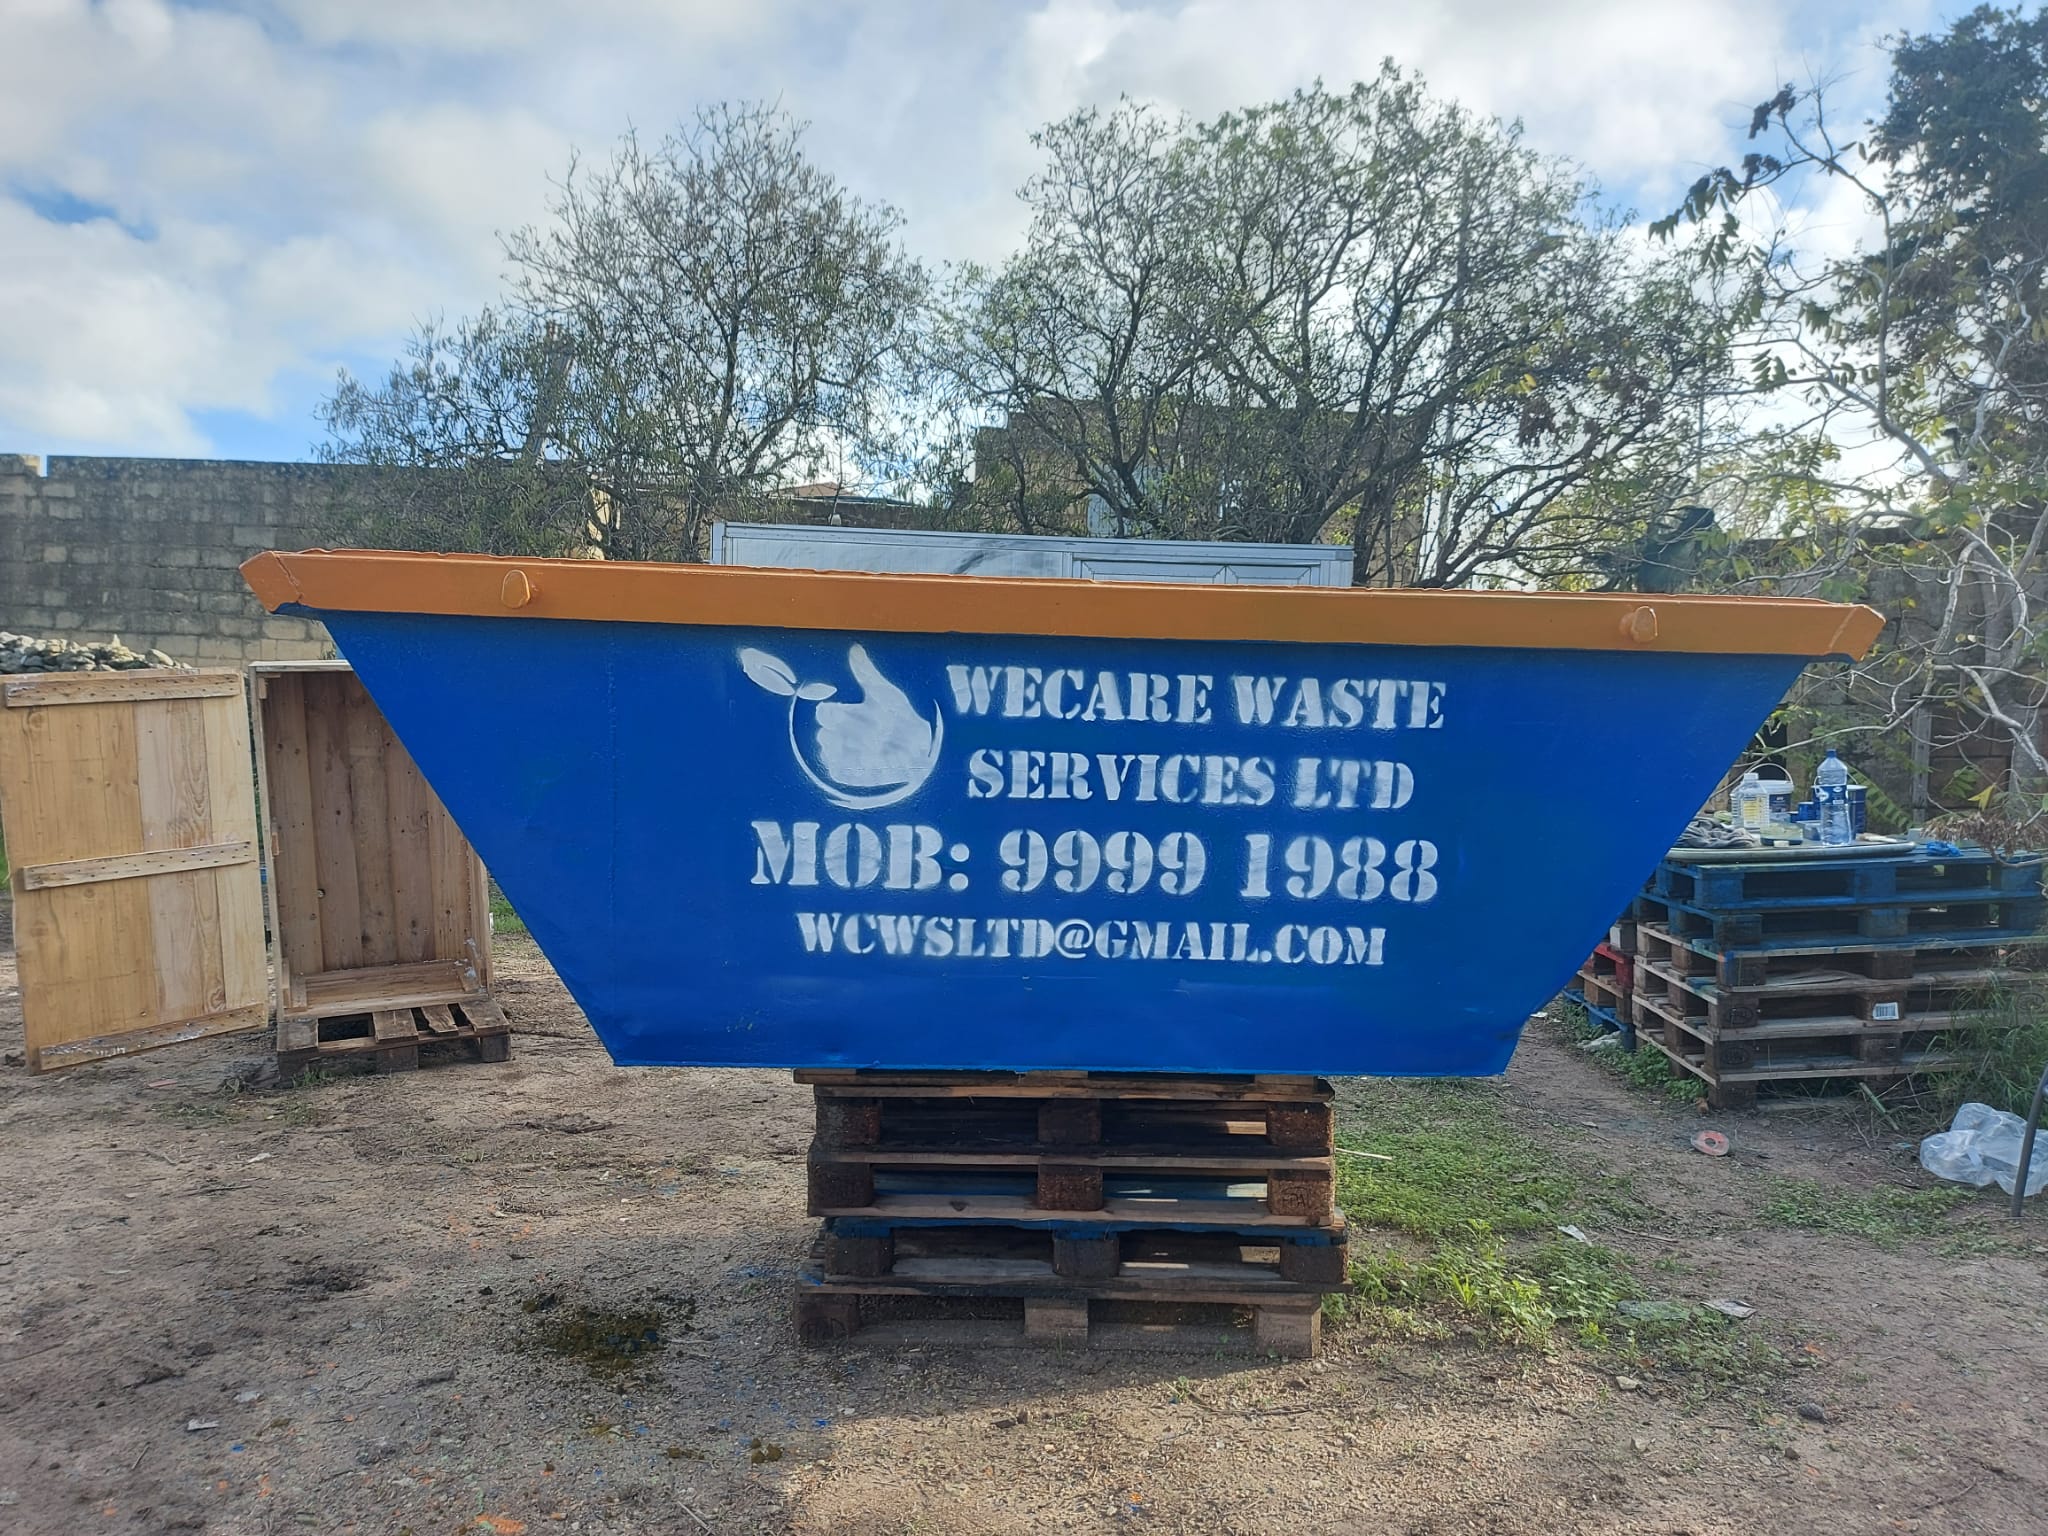 WeCare Waste Services Ltd - Waste Management